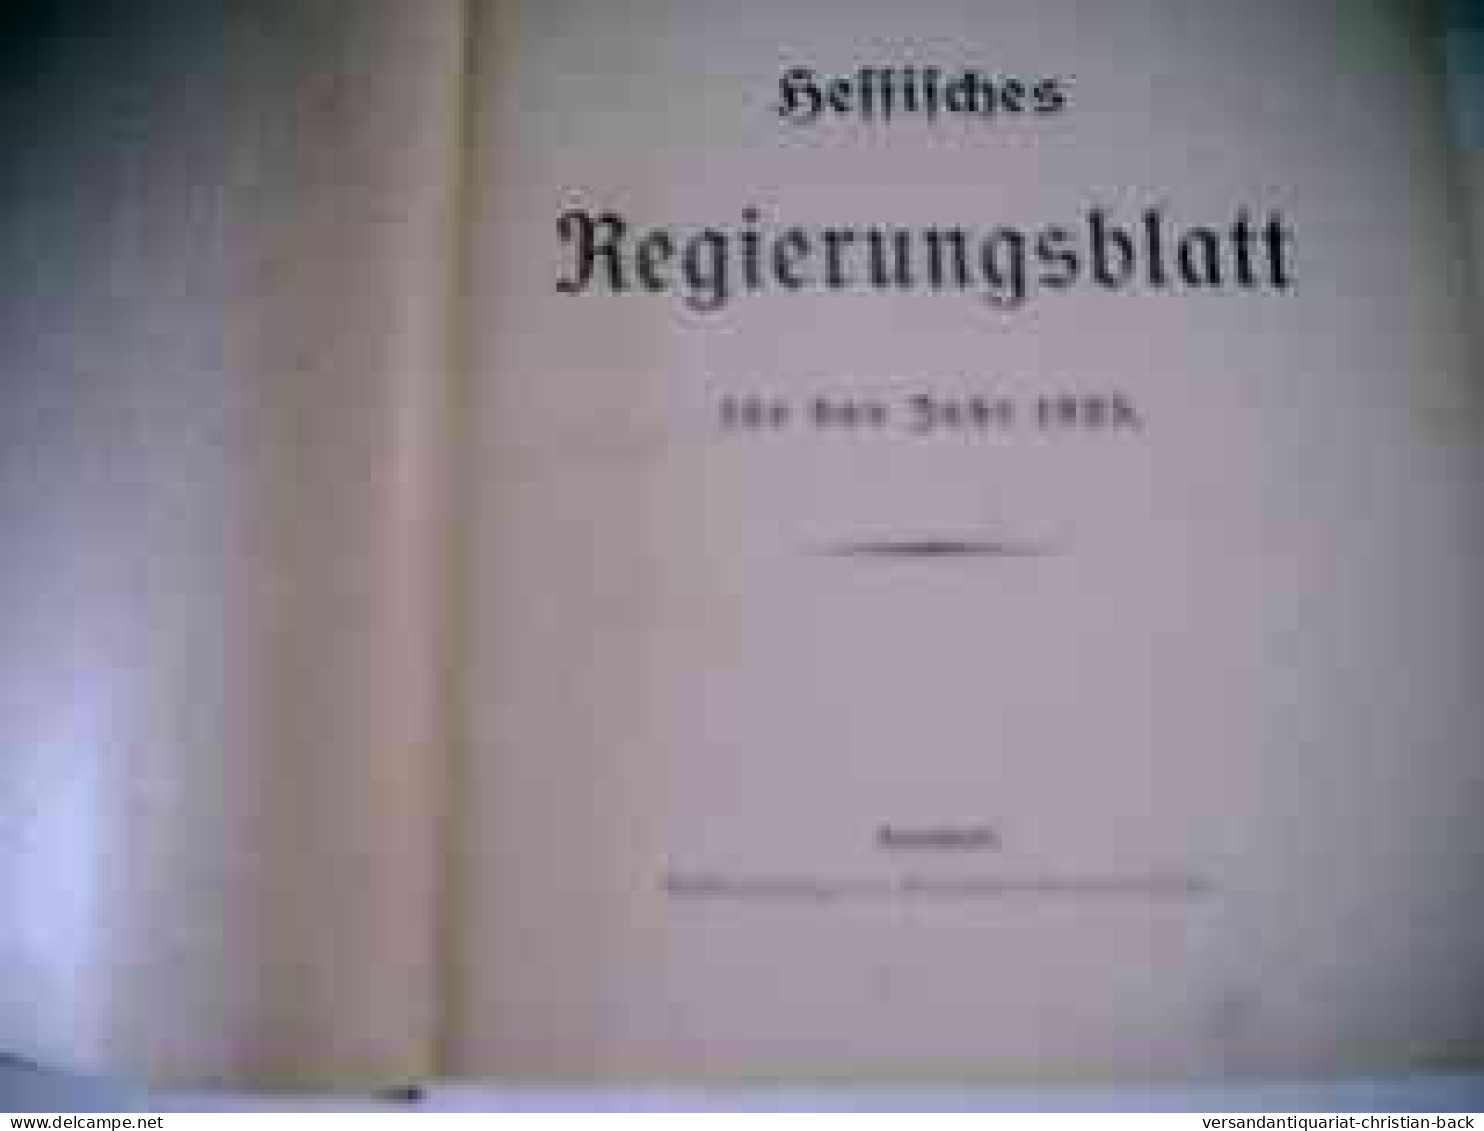 Hessisches Regierungsblatt Für Das Jahr 1925 - Diritto